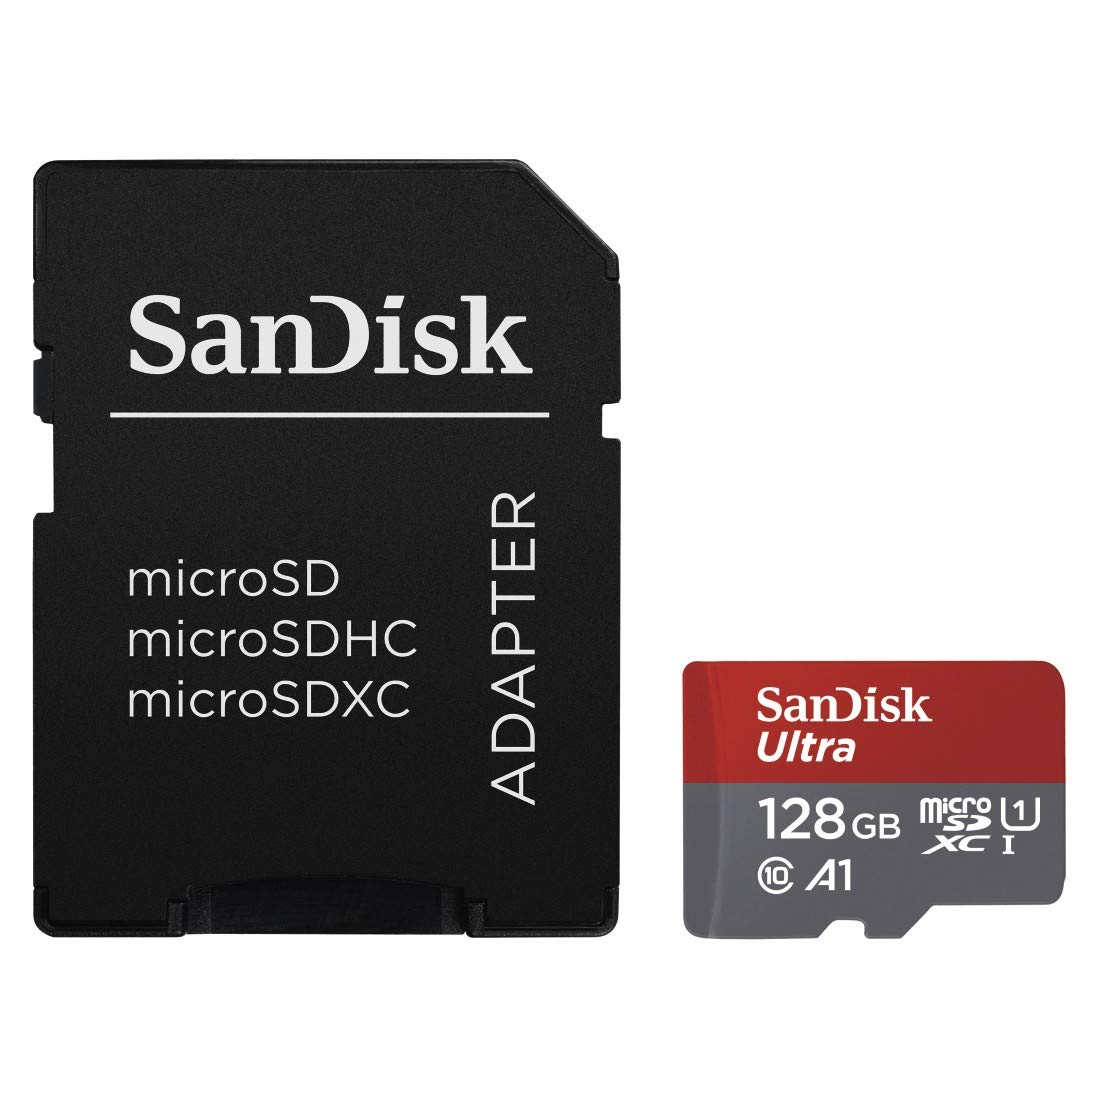 SanDisk Ultra 128GB Imaging microSDXC Speicherkarte + SD-Adapter bis zu 100 MB/Sek, Class 10, U1, A1,Grau, Rot, Weiß